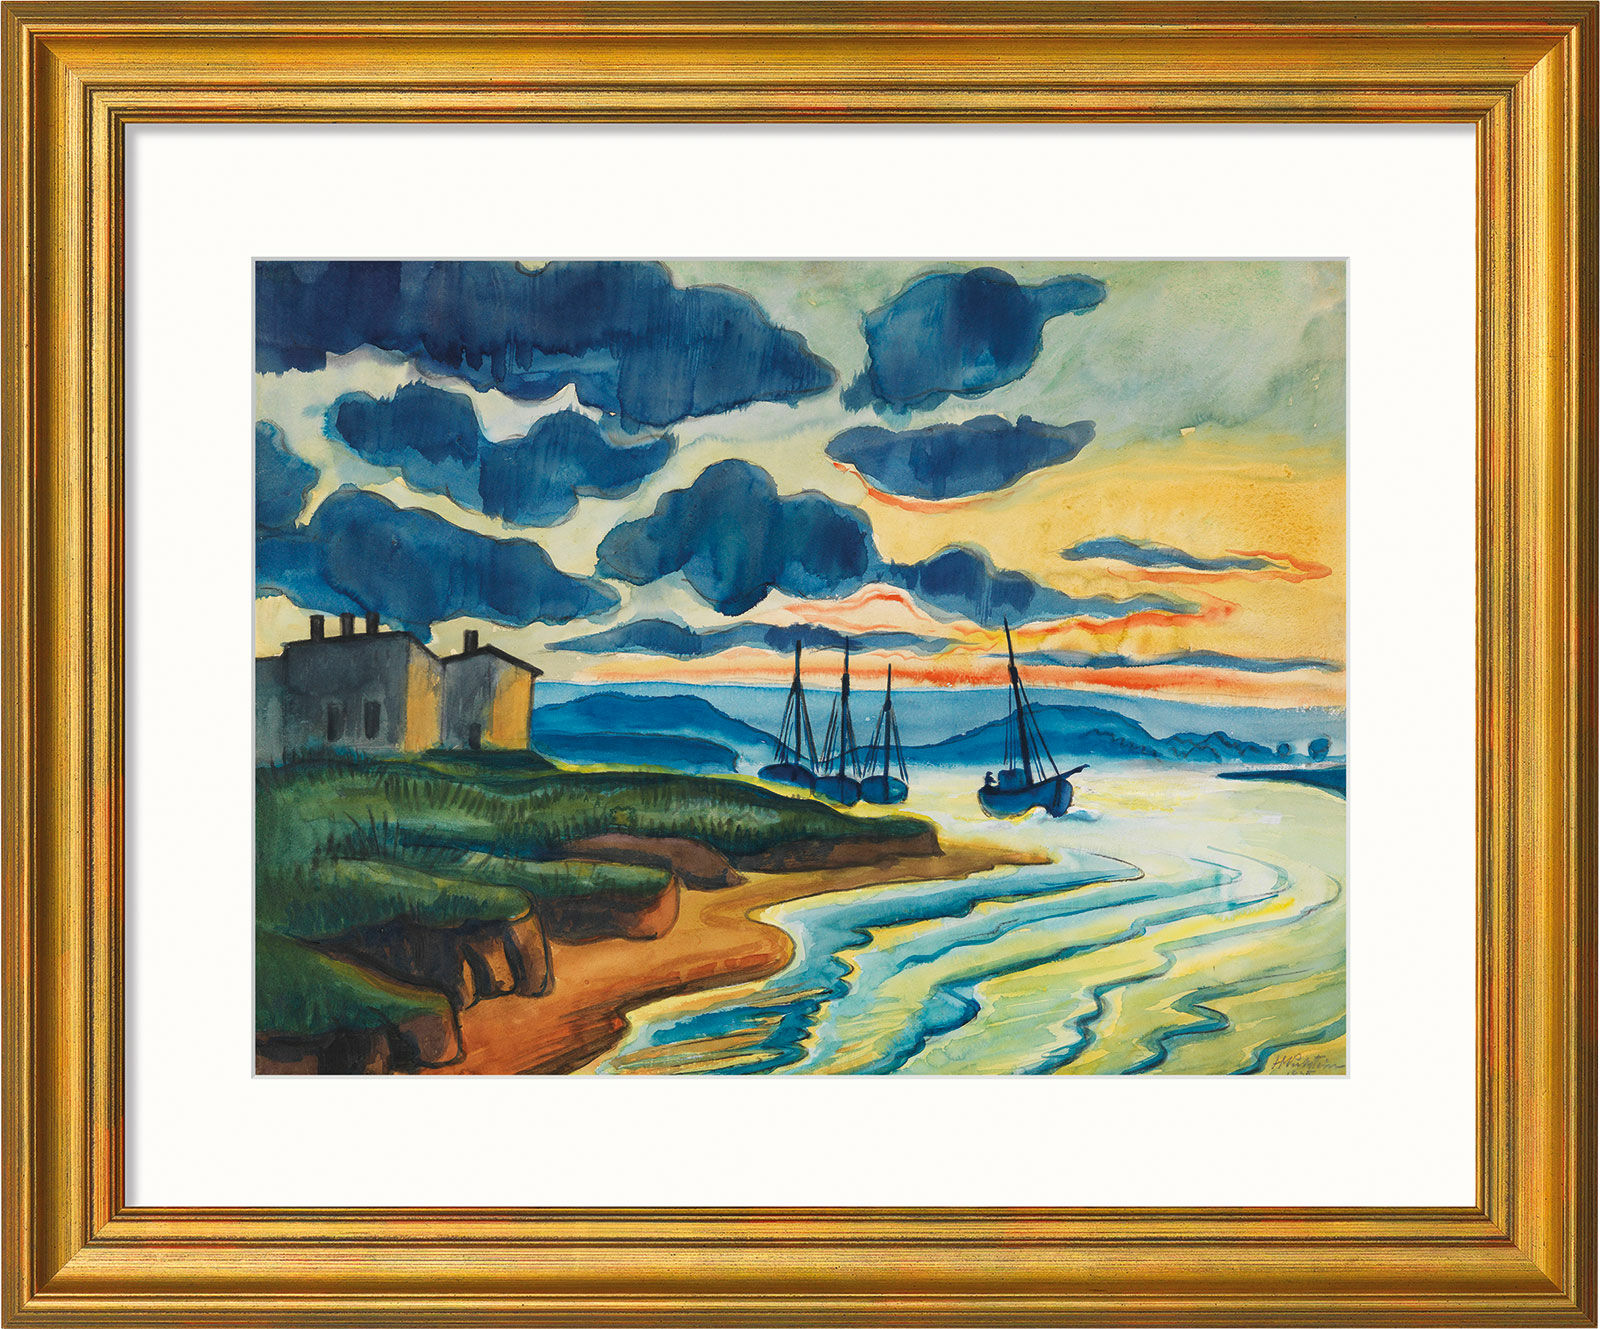 Bild "Sonnenuntergang" (1925), Version goldfarben gerahmt von Max Pechstein